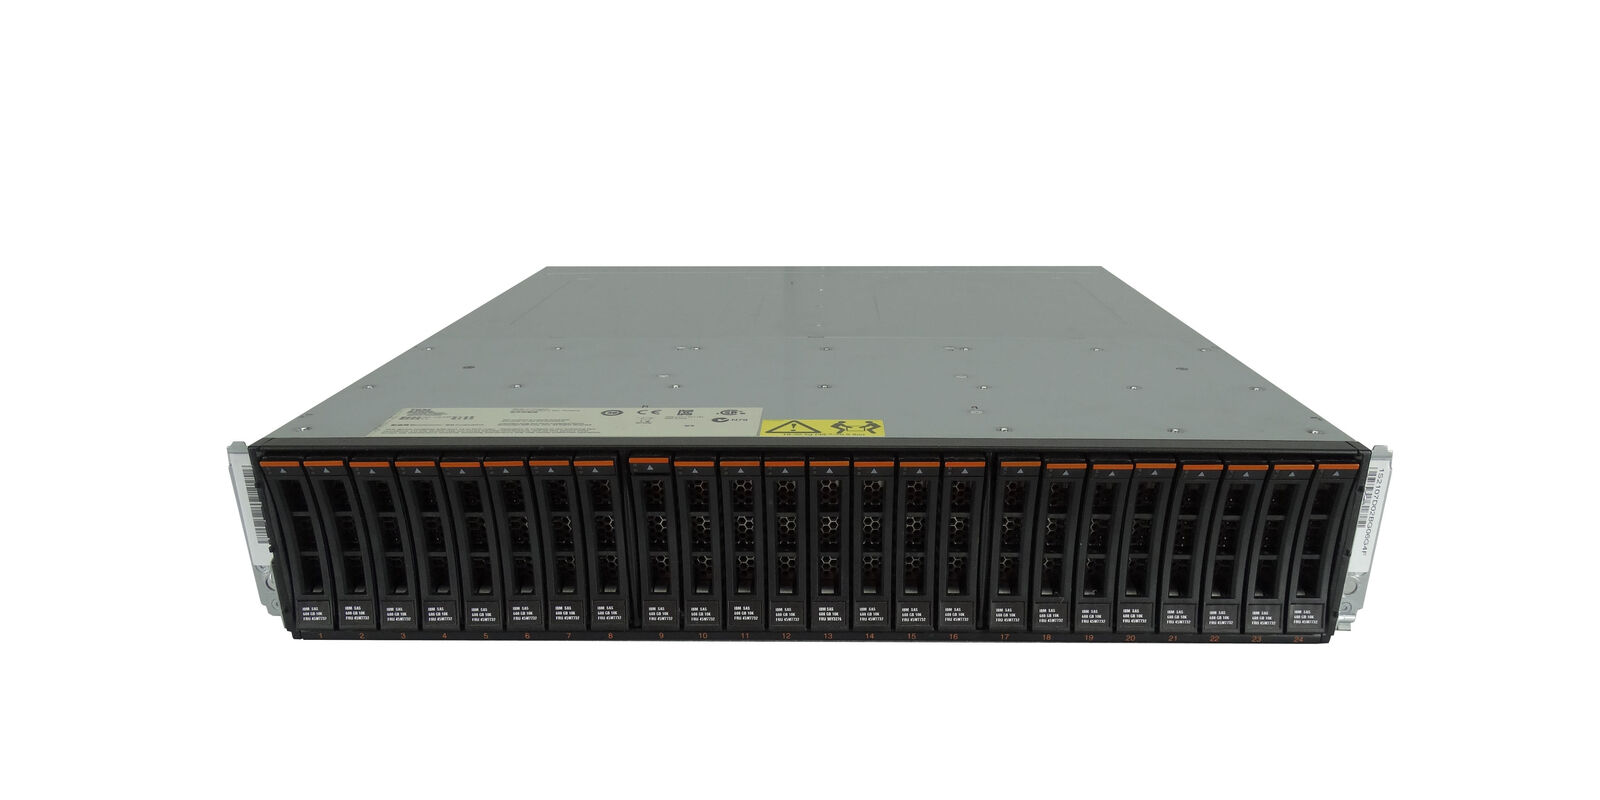 IBM System Storage DS8000 Series 2107-D02